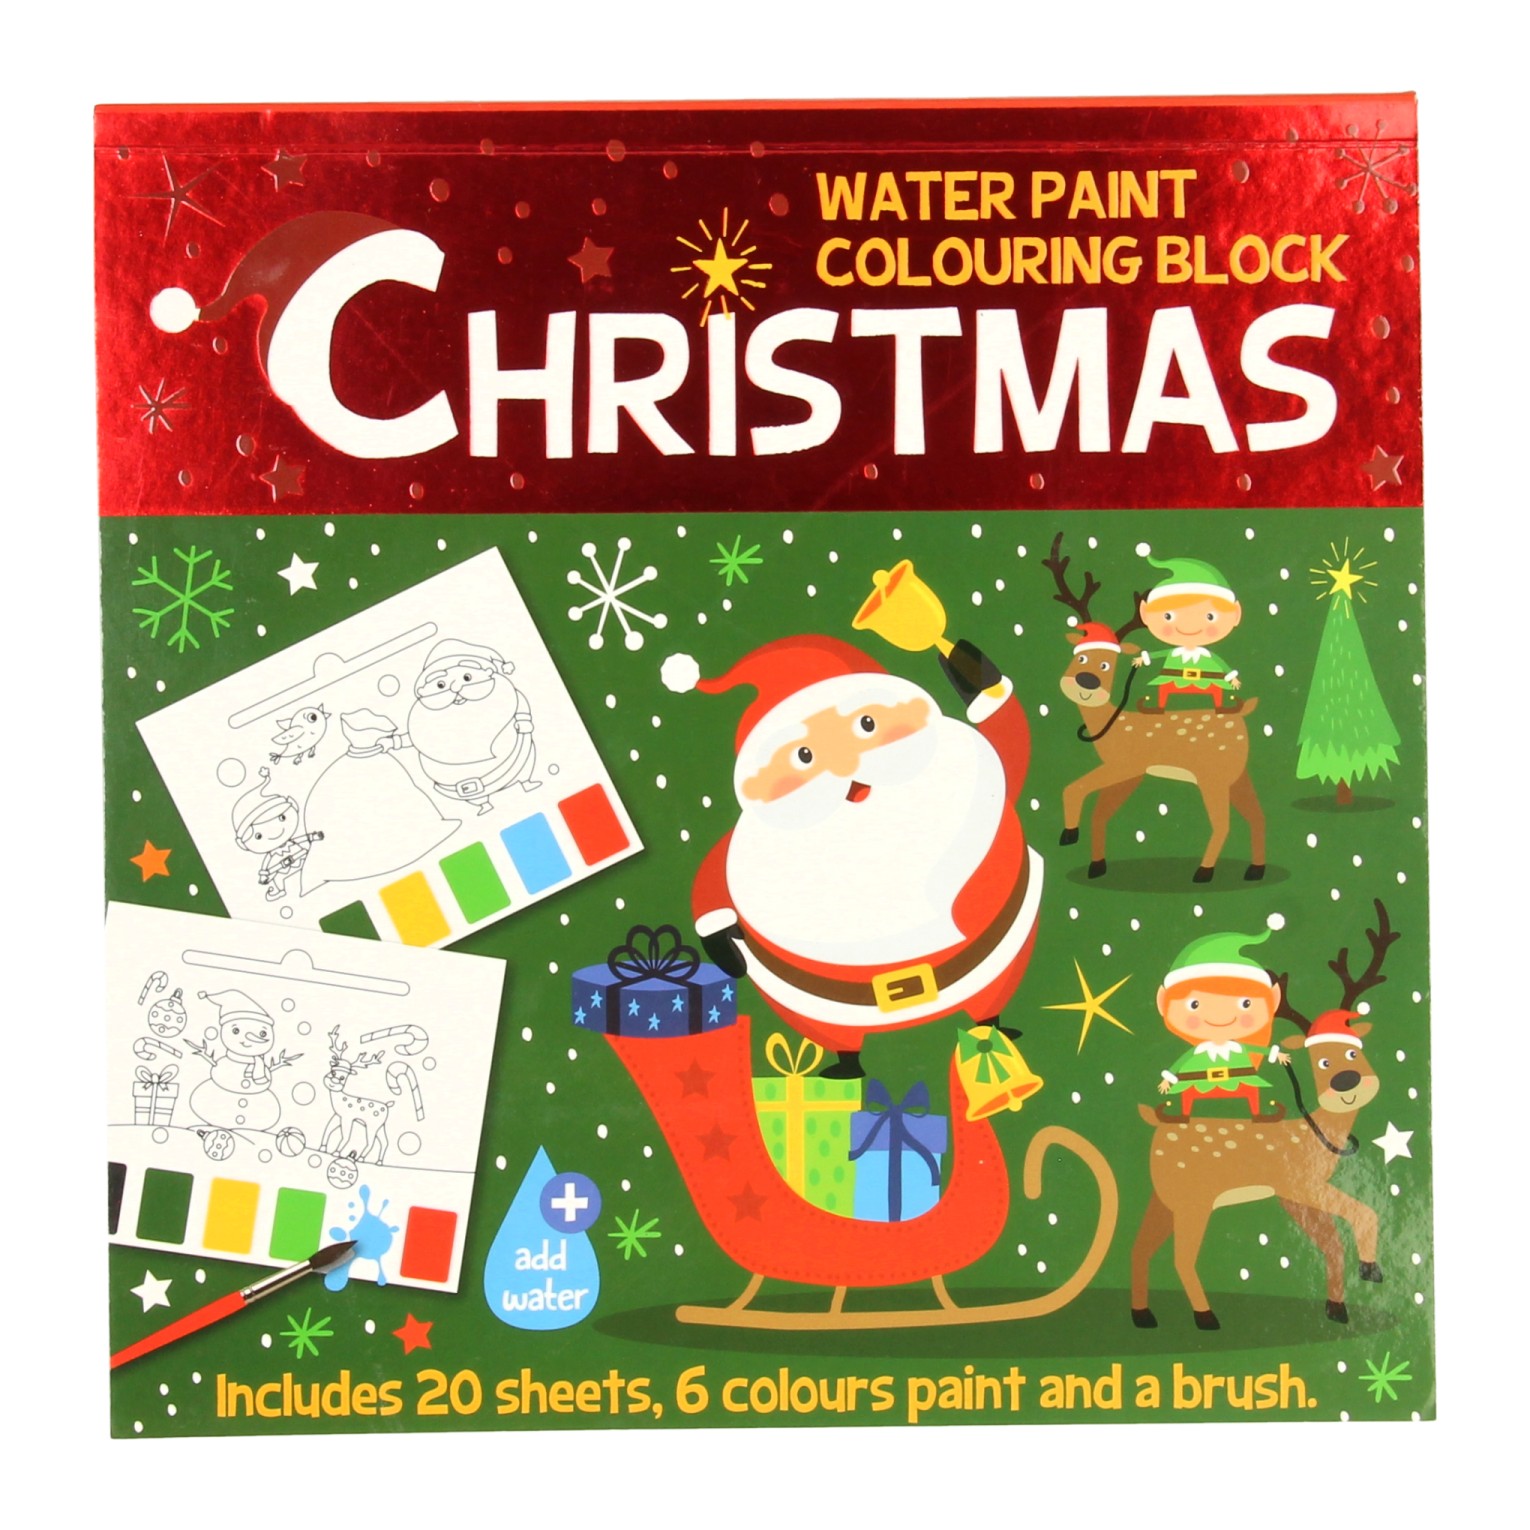 Kerst waterverf kleurboek voor kinderen met Kerstman, kerstboom en rendieren voor Kerstmis (Waterpaint Christmas)